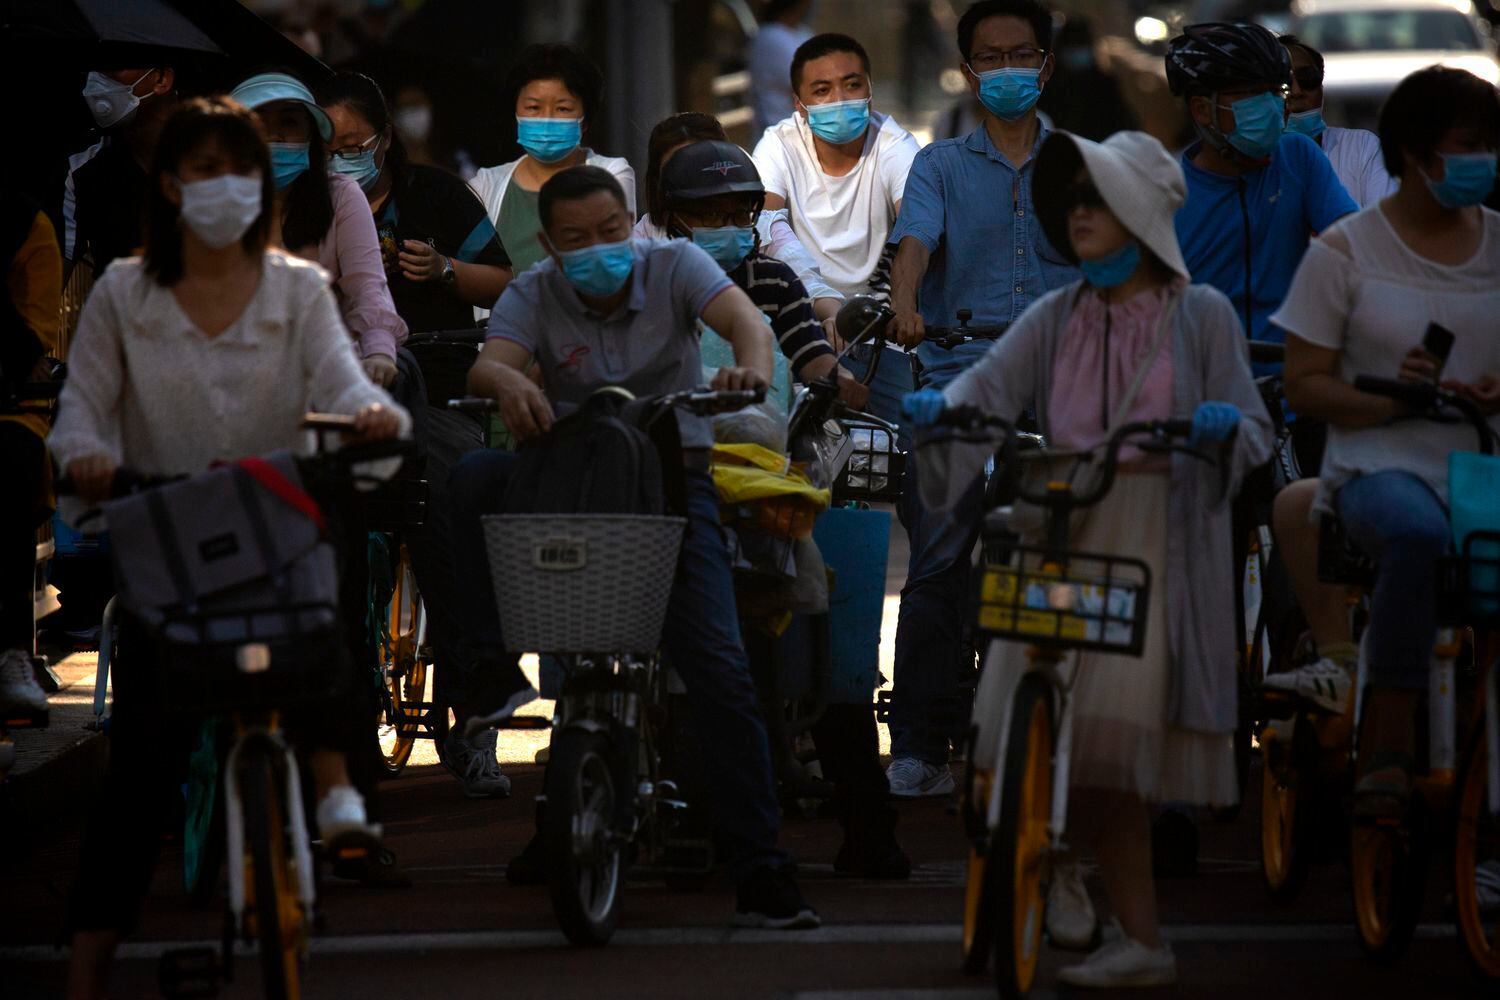 Pessoas usando máscaras de proteção em uma avenida movimentada no centro de Pequim, na China, nesta quarta-feira. País começa a liberar entrada de estrangeiros após surto de covid-19.